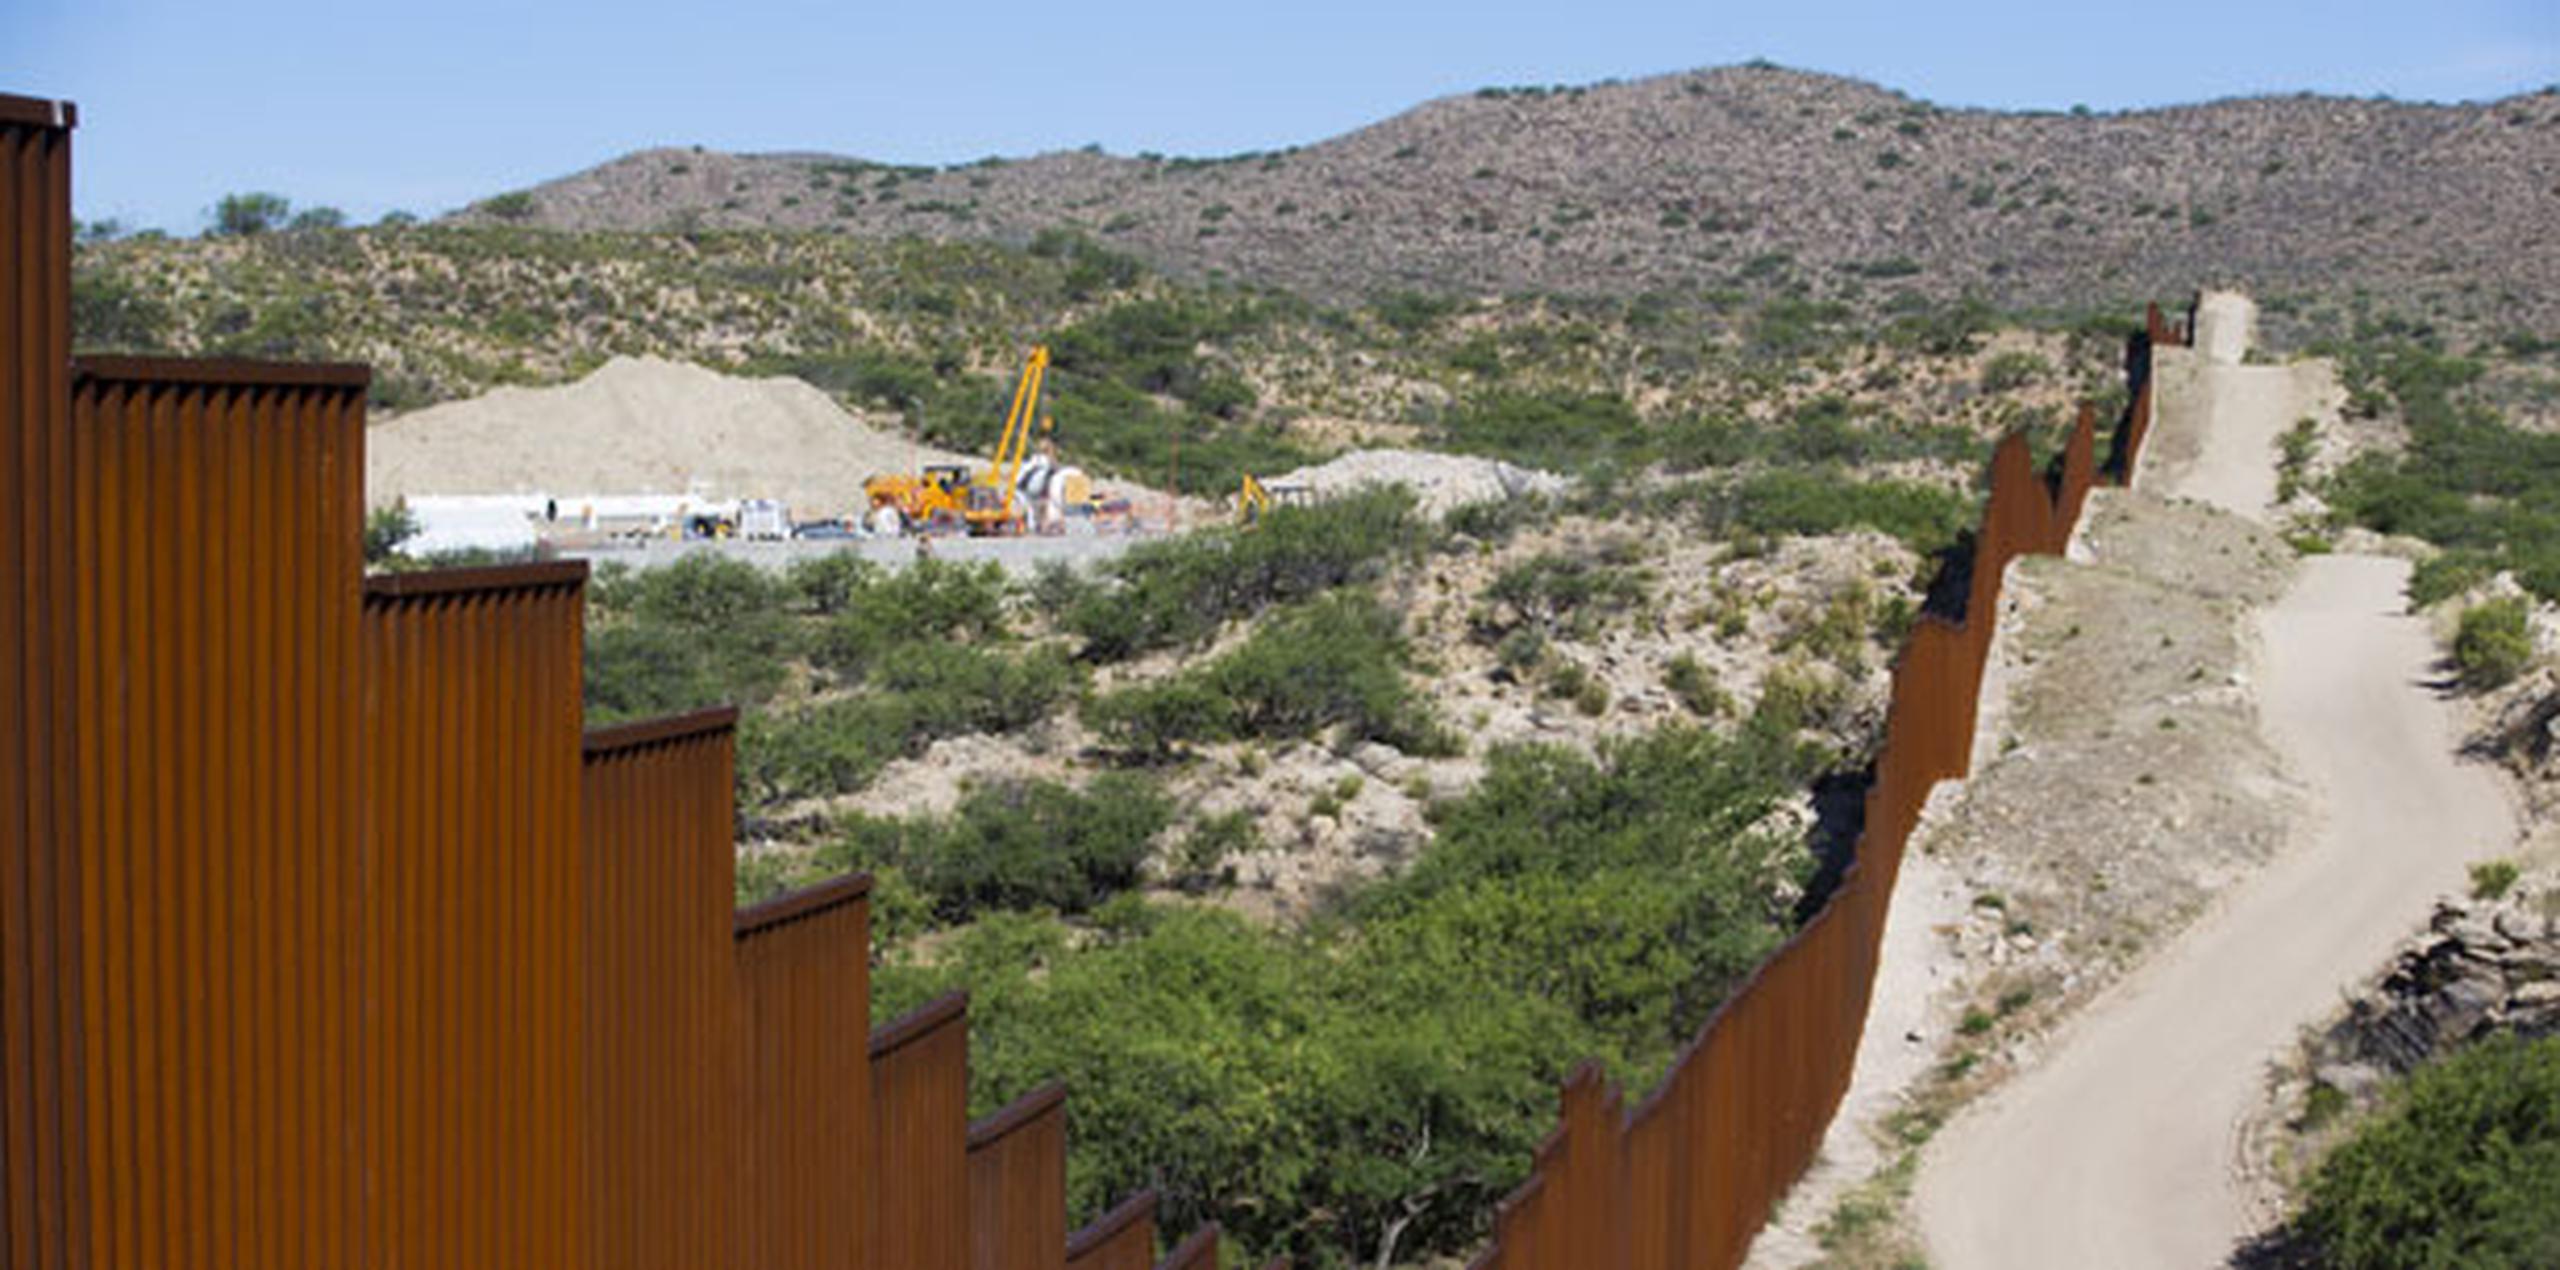 Después de que Trump firmara la semana pasada una orden ejecutiva para construir un muro en la frontera con México y se hablara sobre un posible arancel del 20 % sobre los productos de este país, se inició una campaña en las redes sociales para que los consumidores dejasen de cruzar la frontera para hacer sus compras en EE.UU. (Archivo)